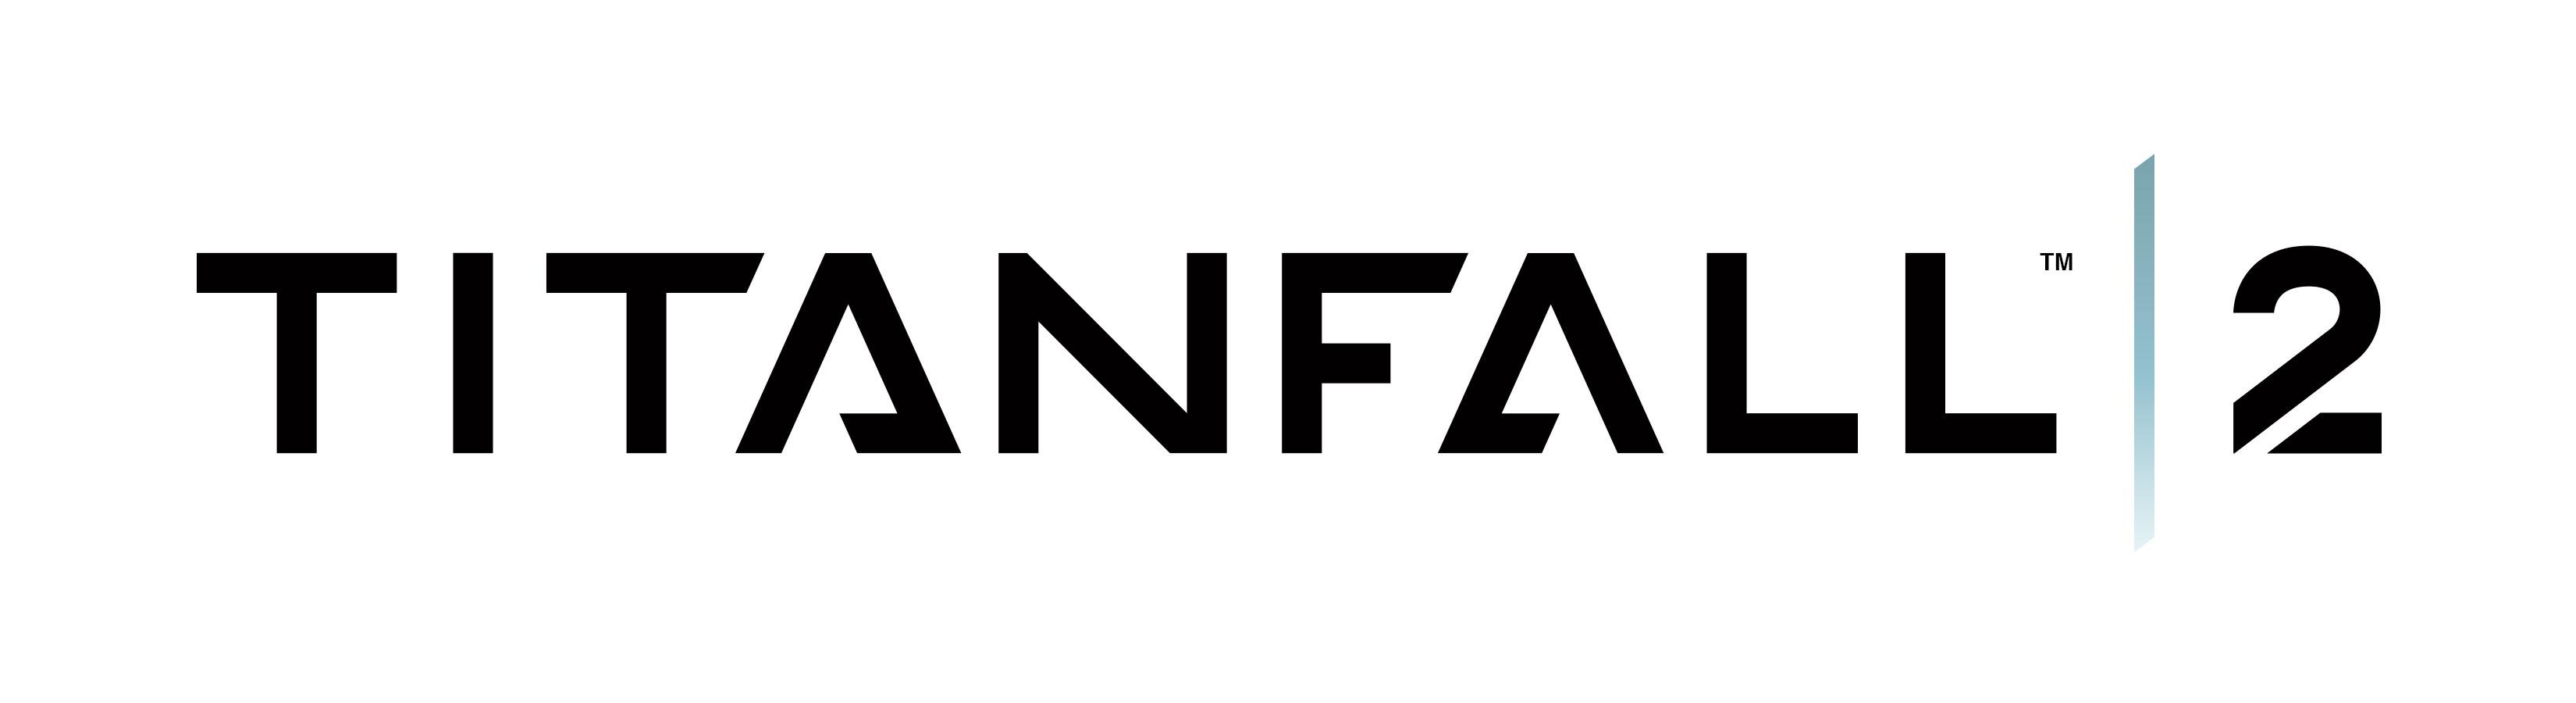 Black and White Titanfall Logo - Titanfall 2 (Xbox One): Amazon.co.uk: PC & Video Games